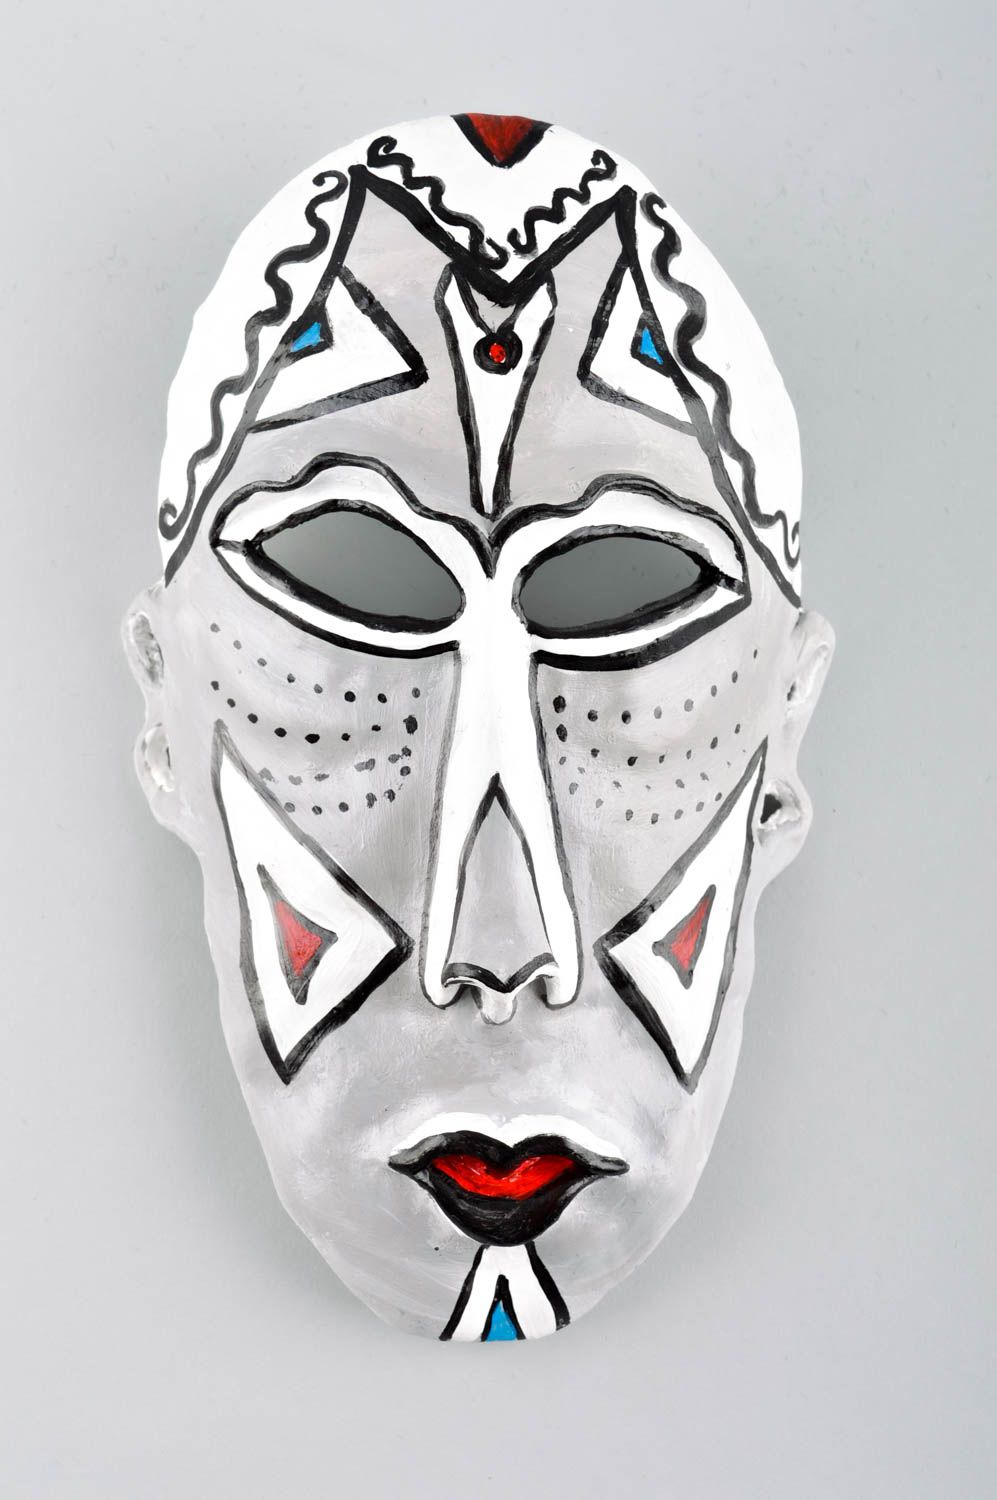 Wohnzimmer Bild handgemacht Deko Bild Maske Karneval Keramik Wandbild hell schön foto 2